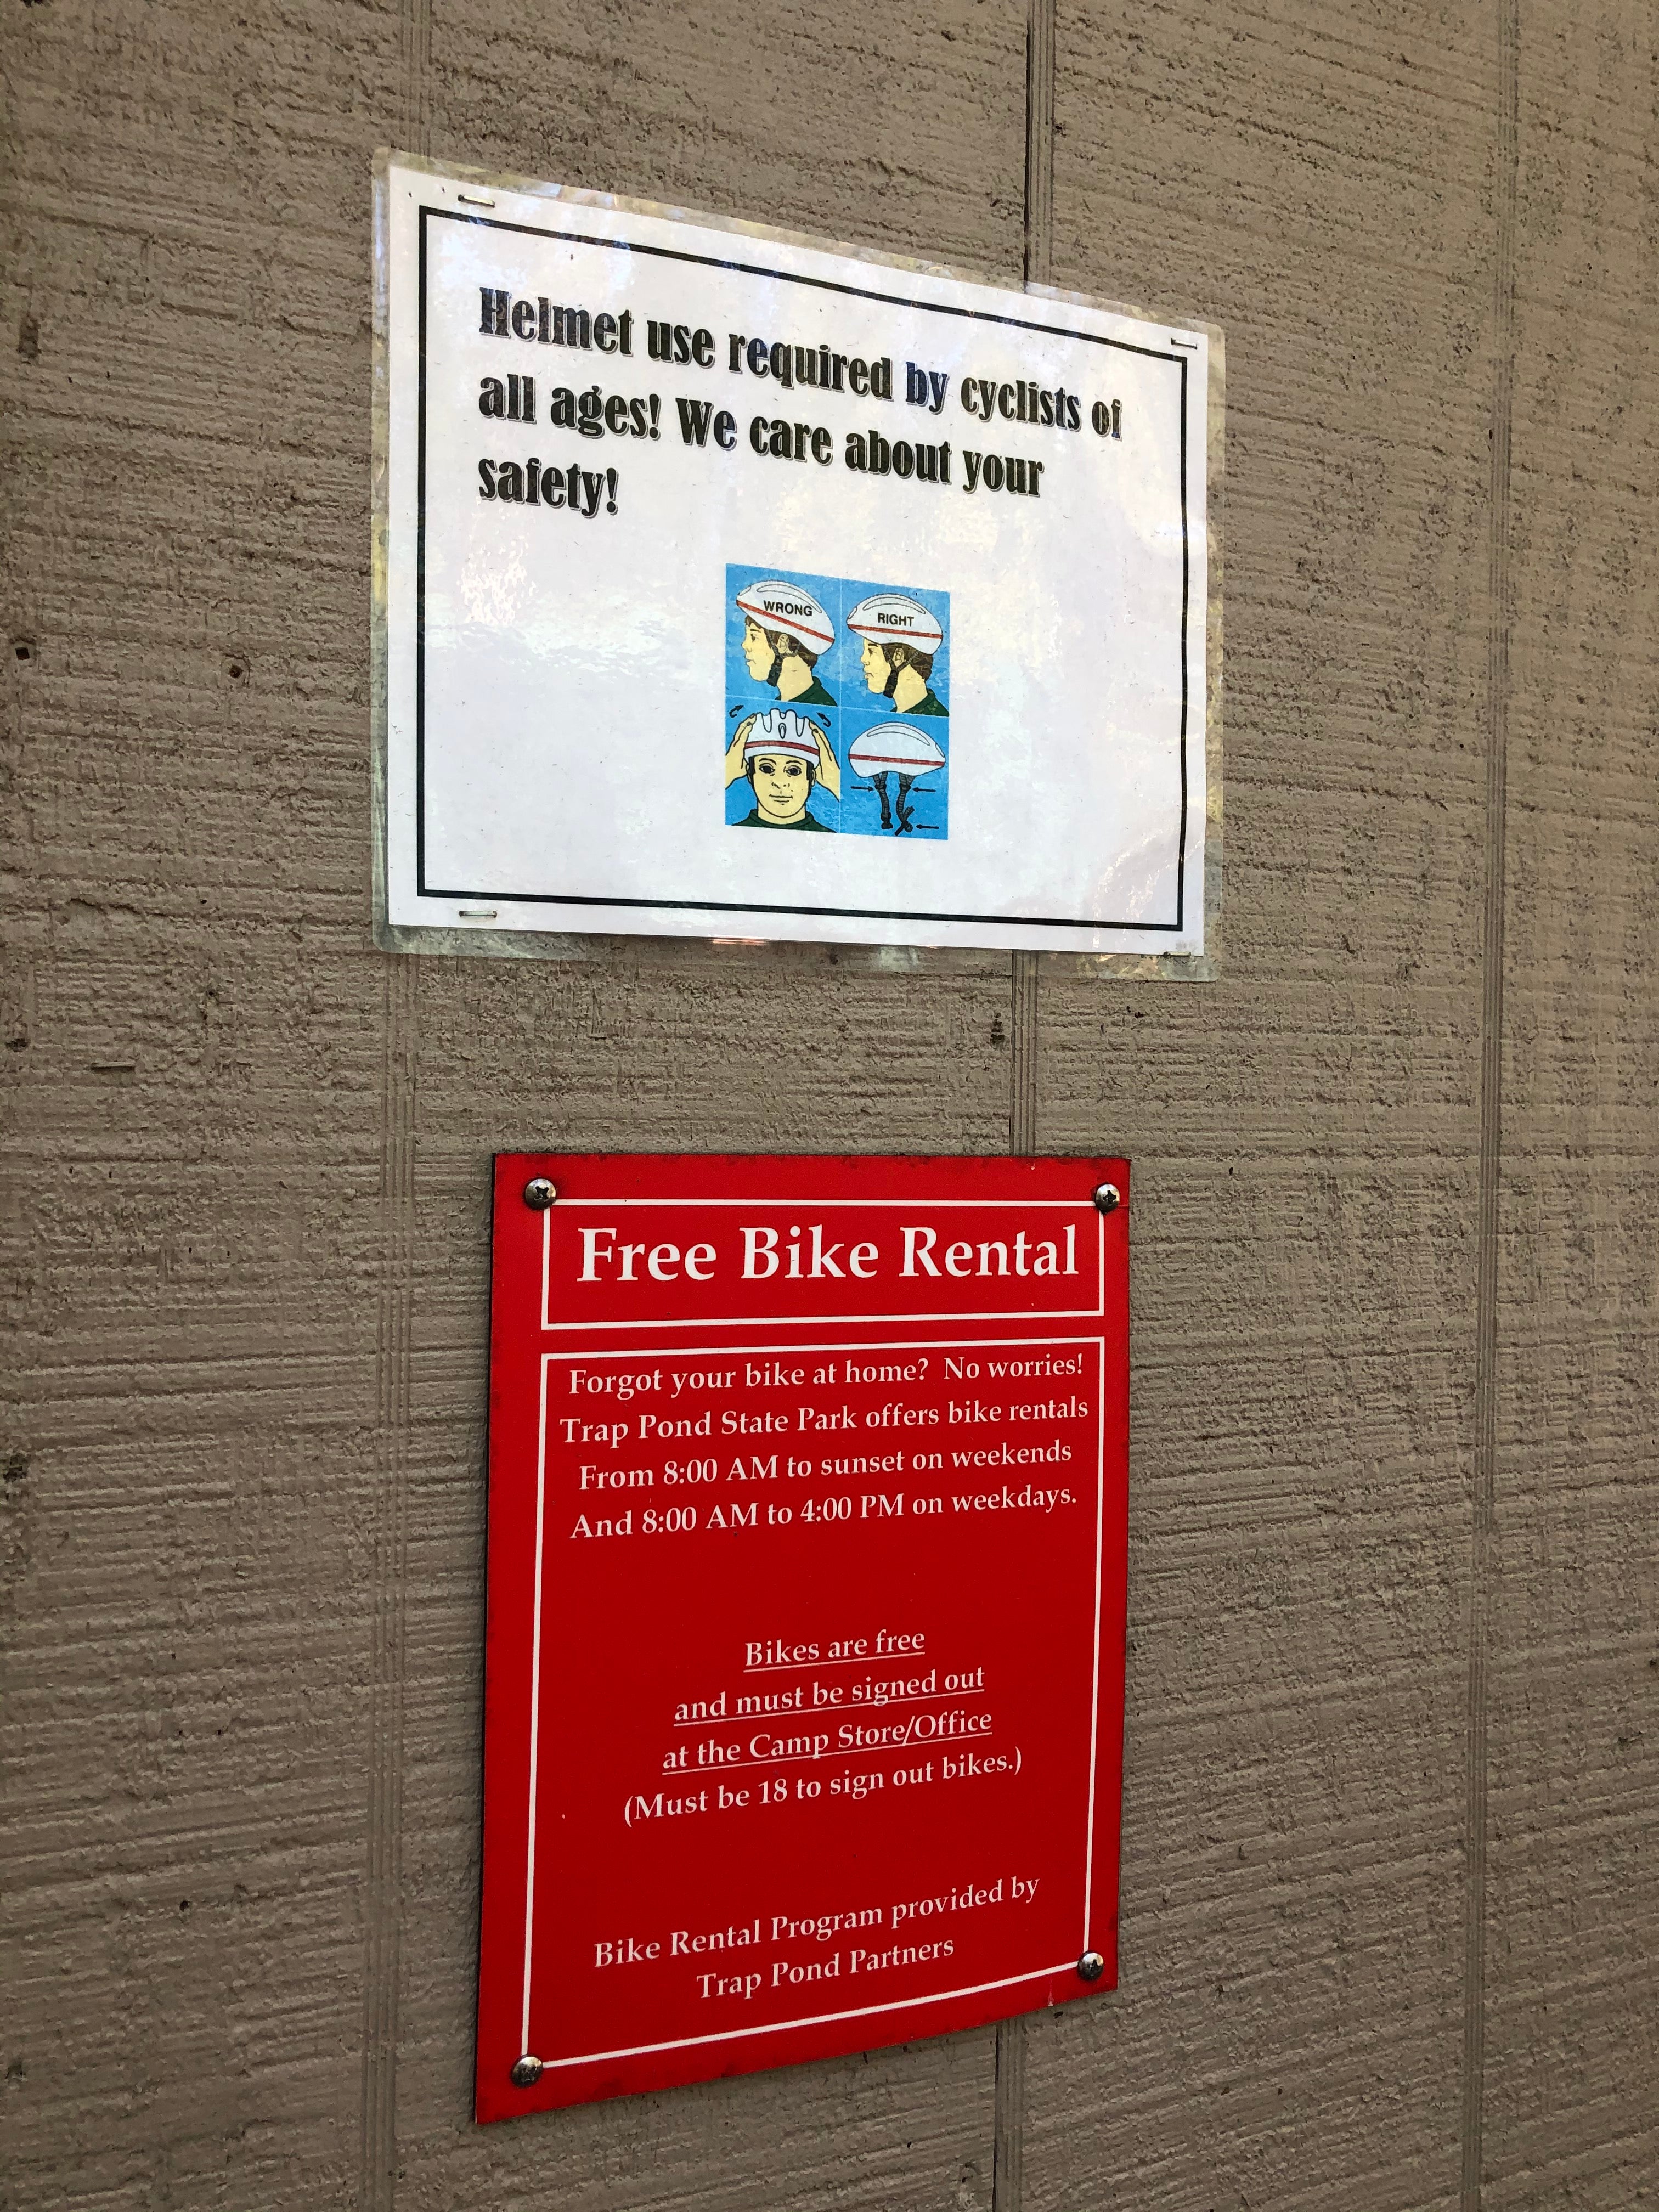 Free bike rental was a nice perk!